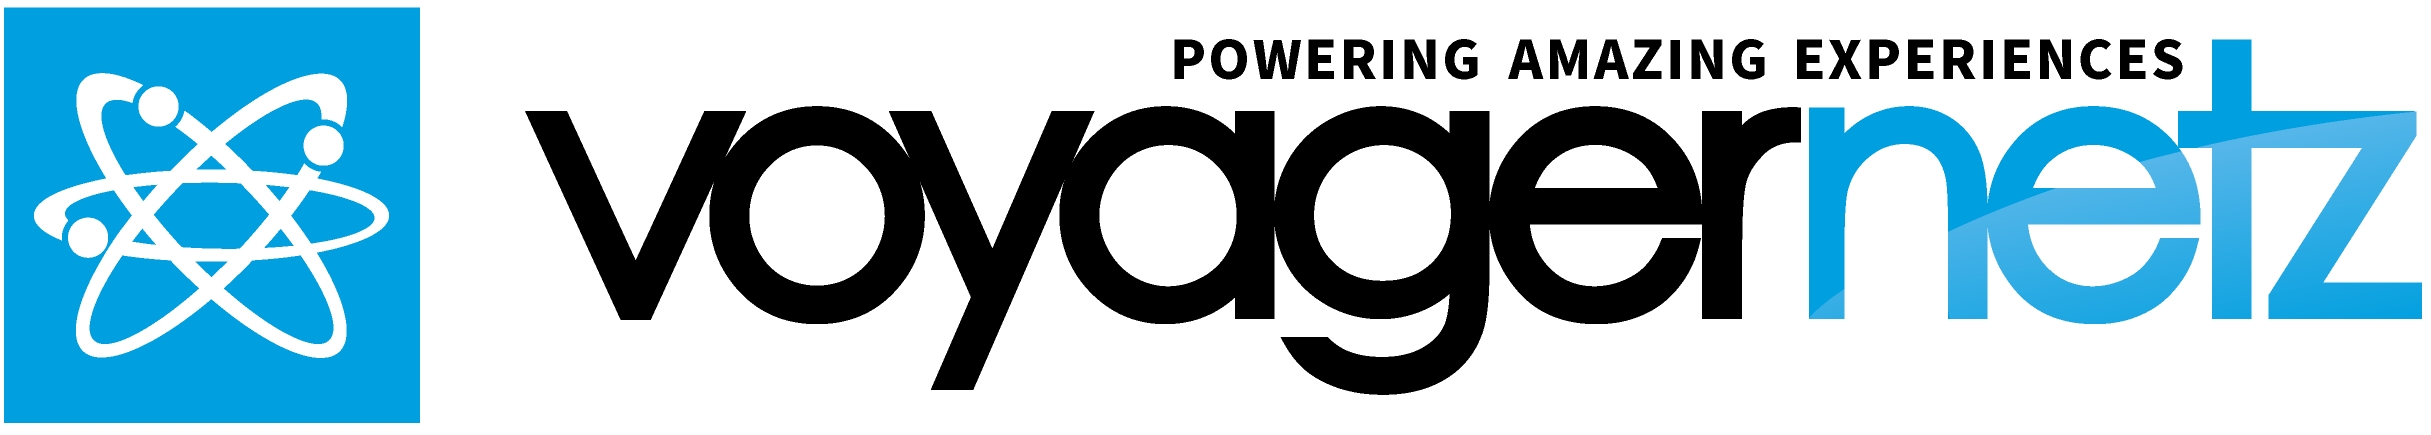 VoyagerNetz New Powering Amazing Experiences Logo